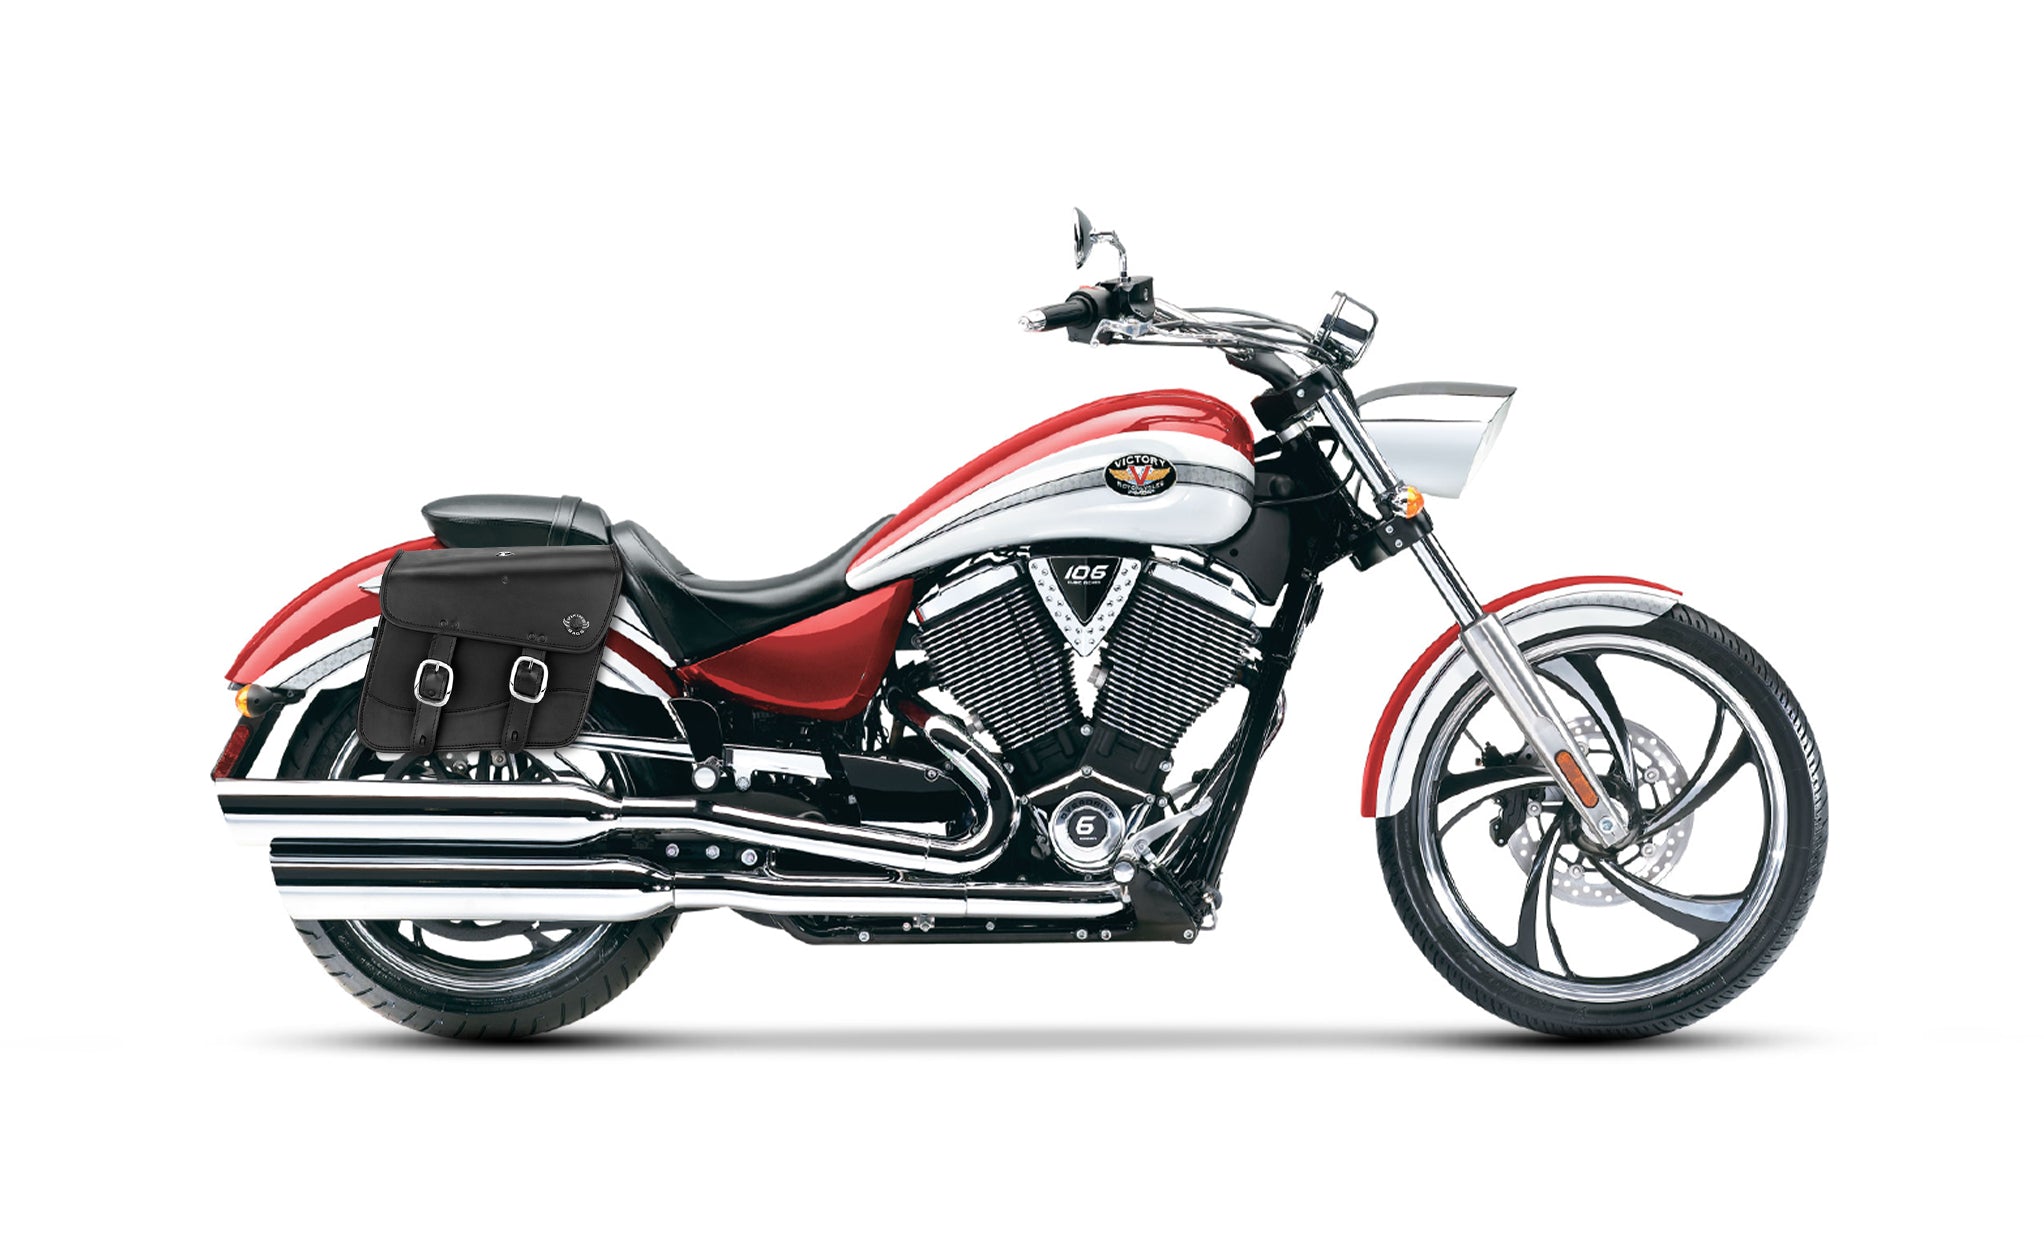 20L - Thor Medium Victory Vegas Leather Motorcycle Saddlebags on Bike Photo @expand